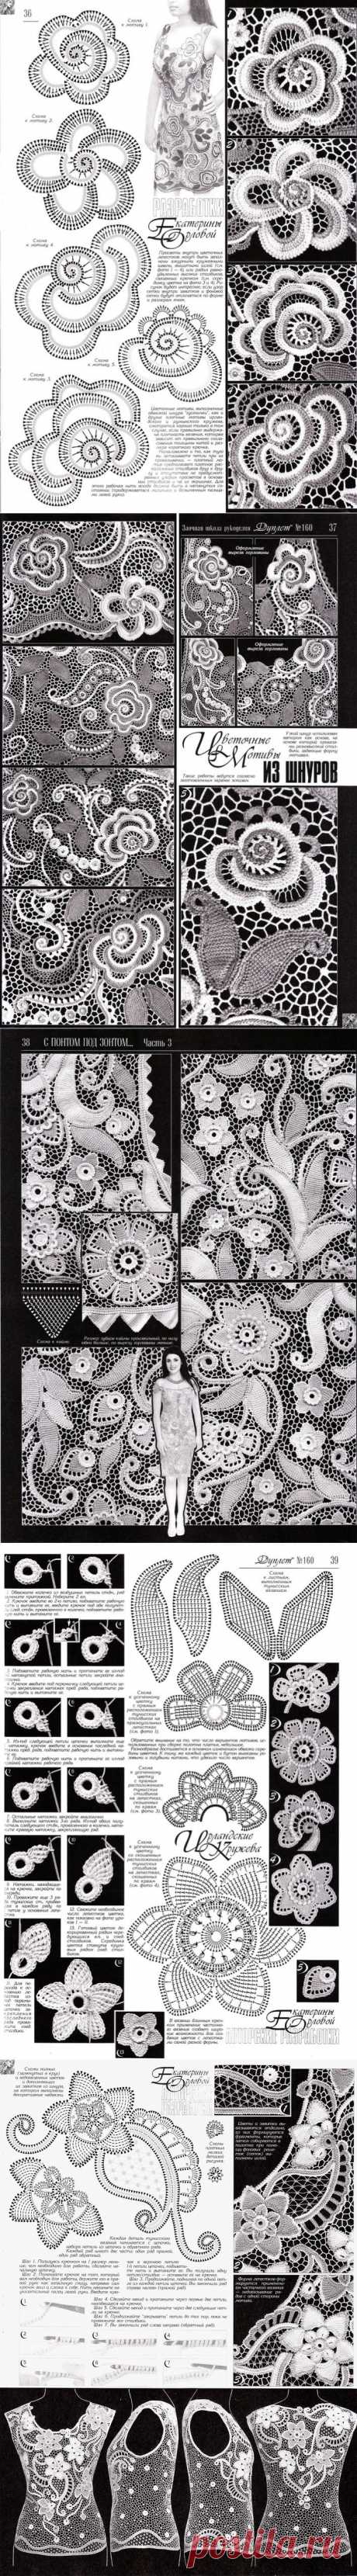 Цветочные бутоны и листики из шнуров с тунисским вязанием - описание и схемы из *Дуплета*